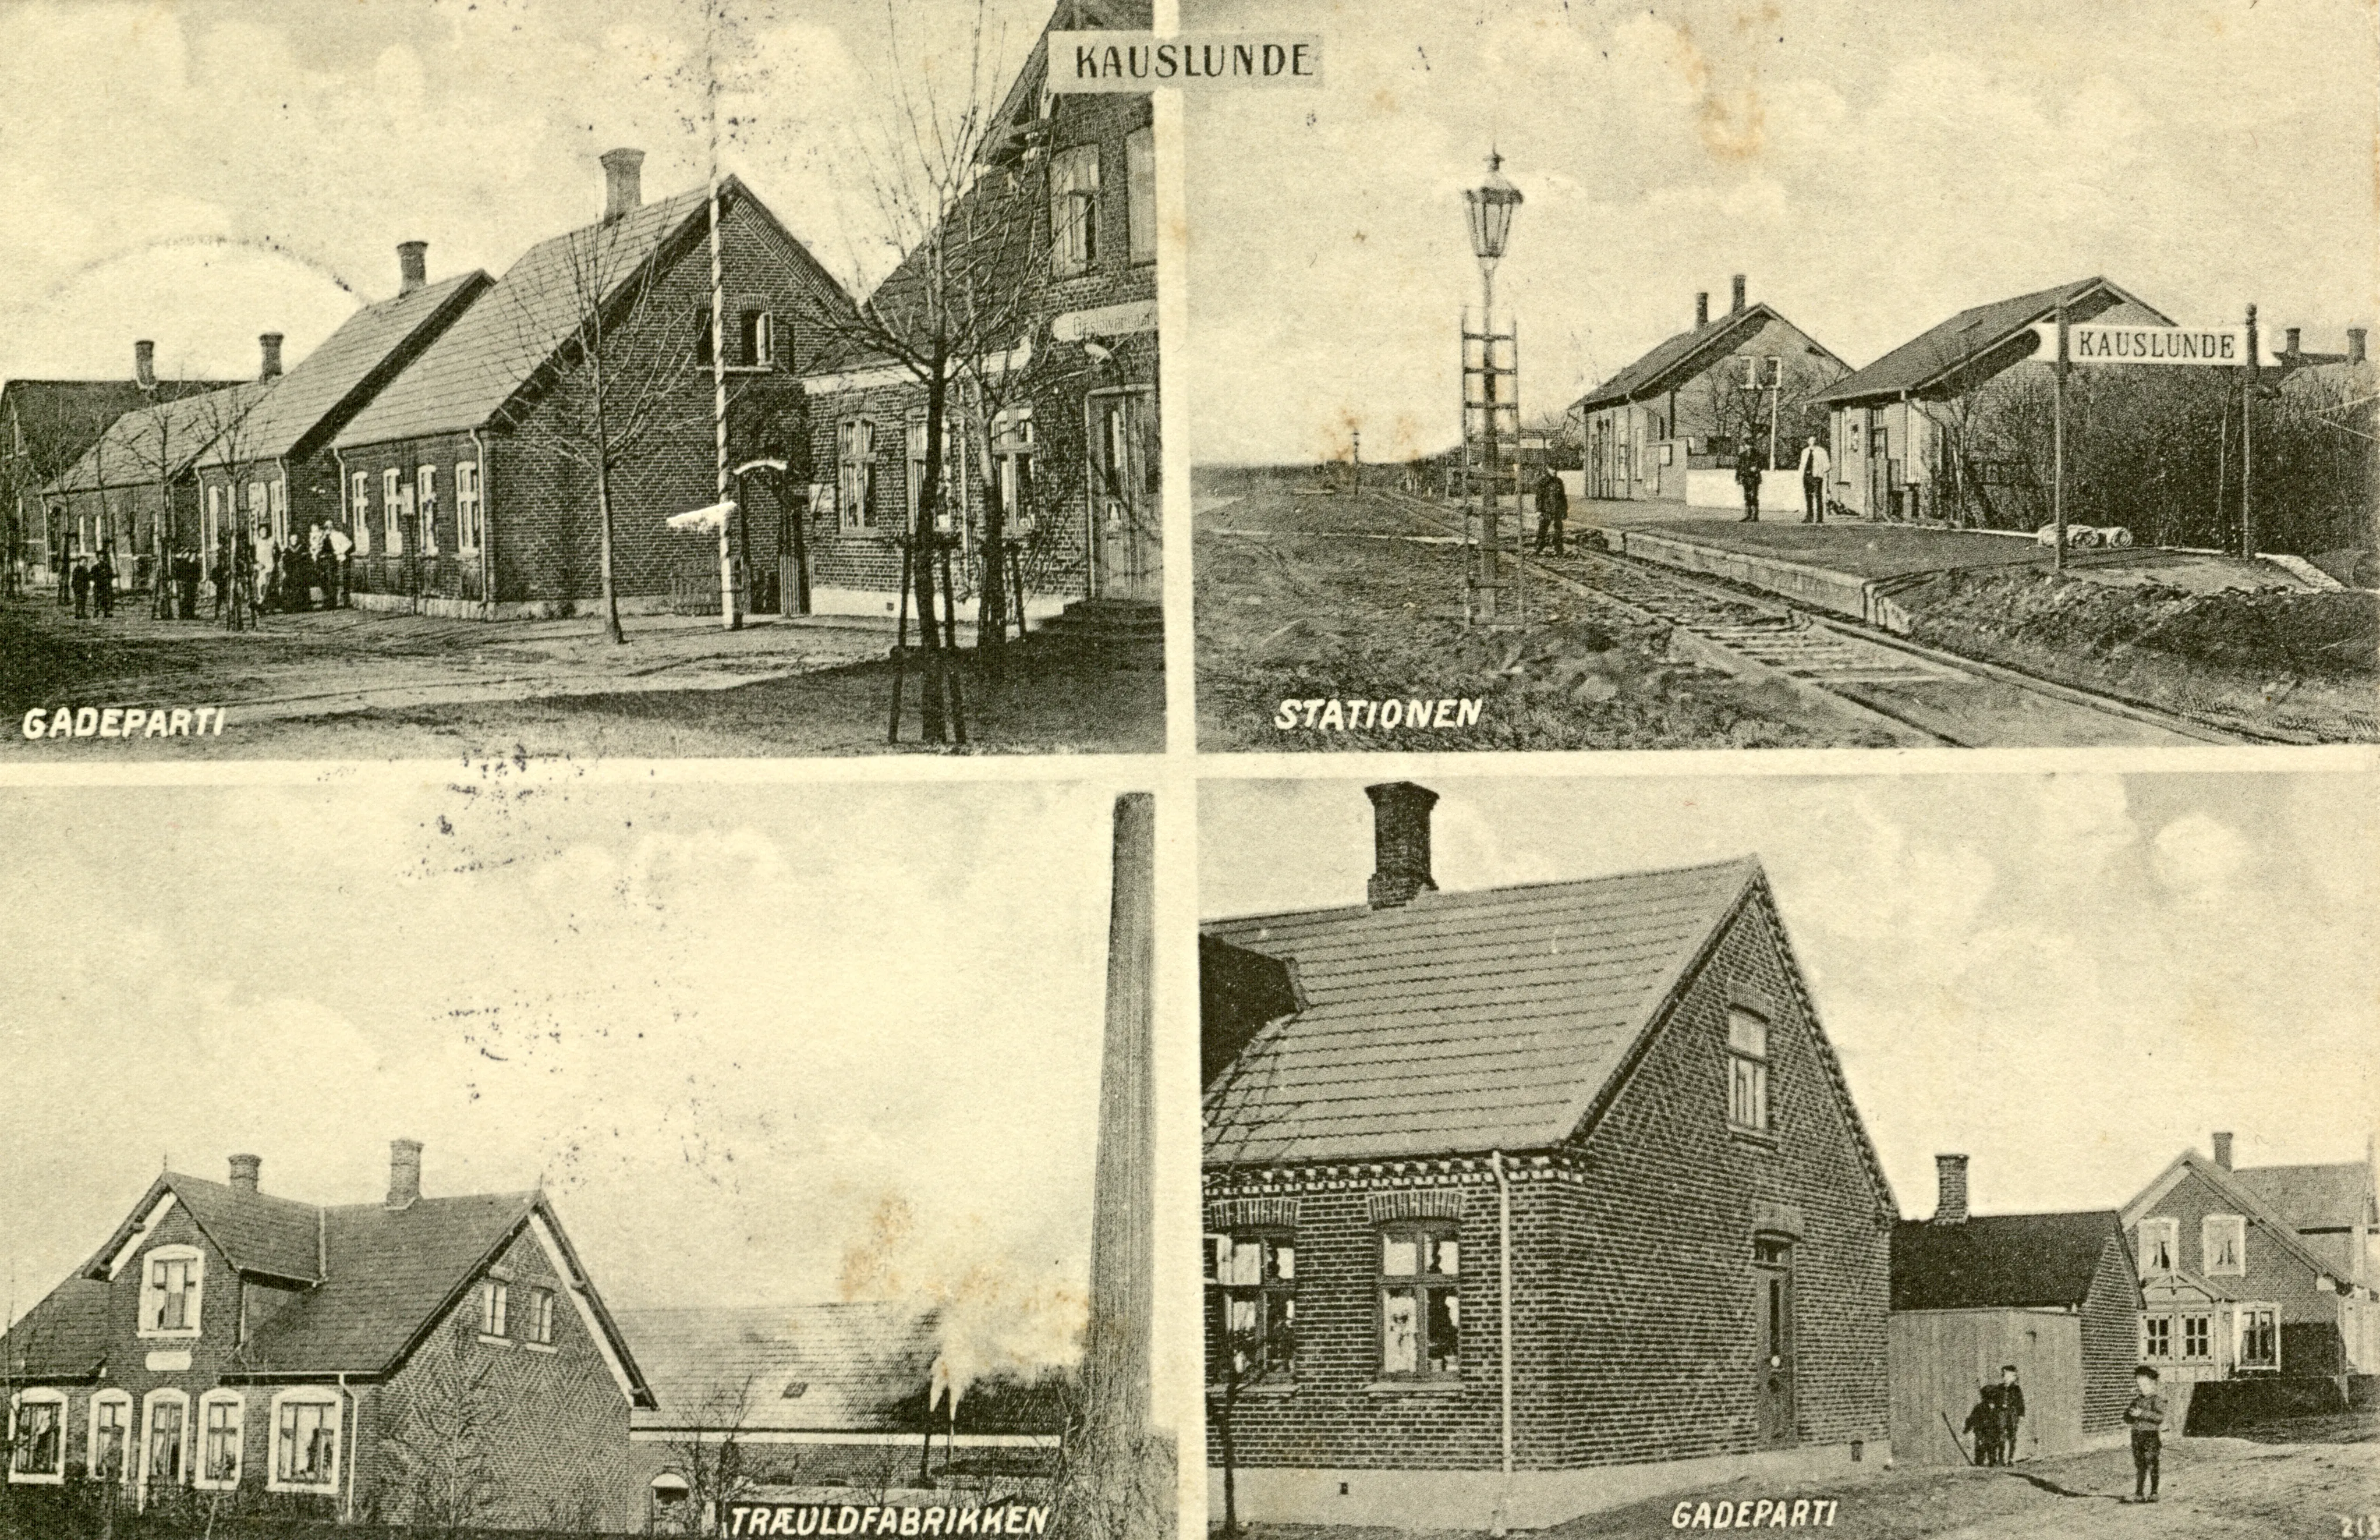 Postkort med Kavslunde Station.